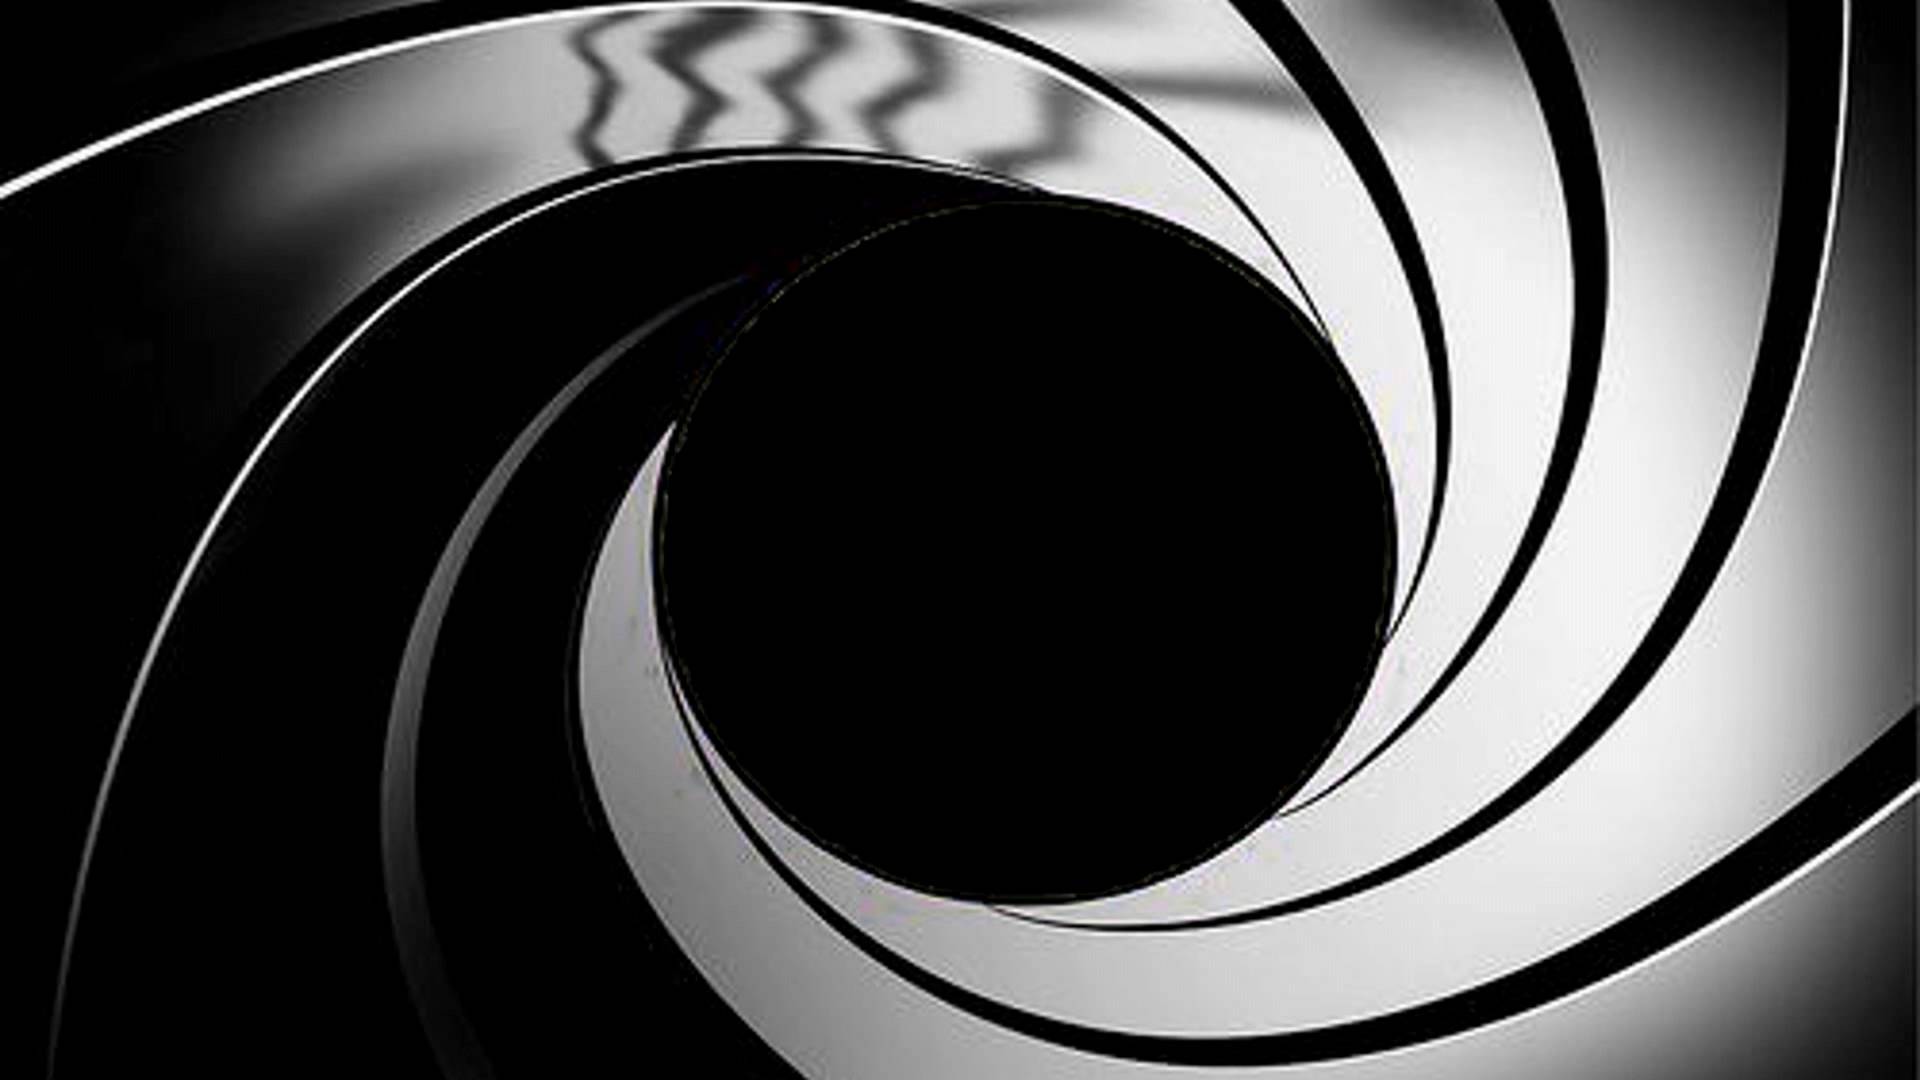 48+] James Bond Gun Barrel Wallpaper - WallpaperSafari